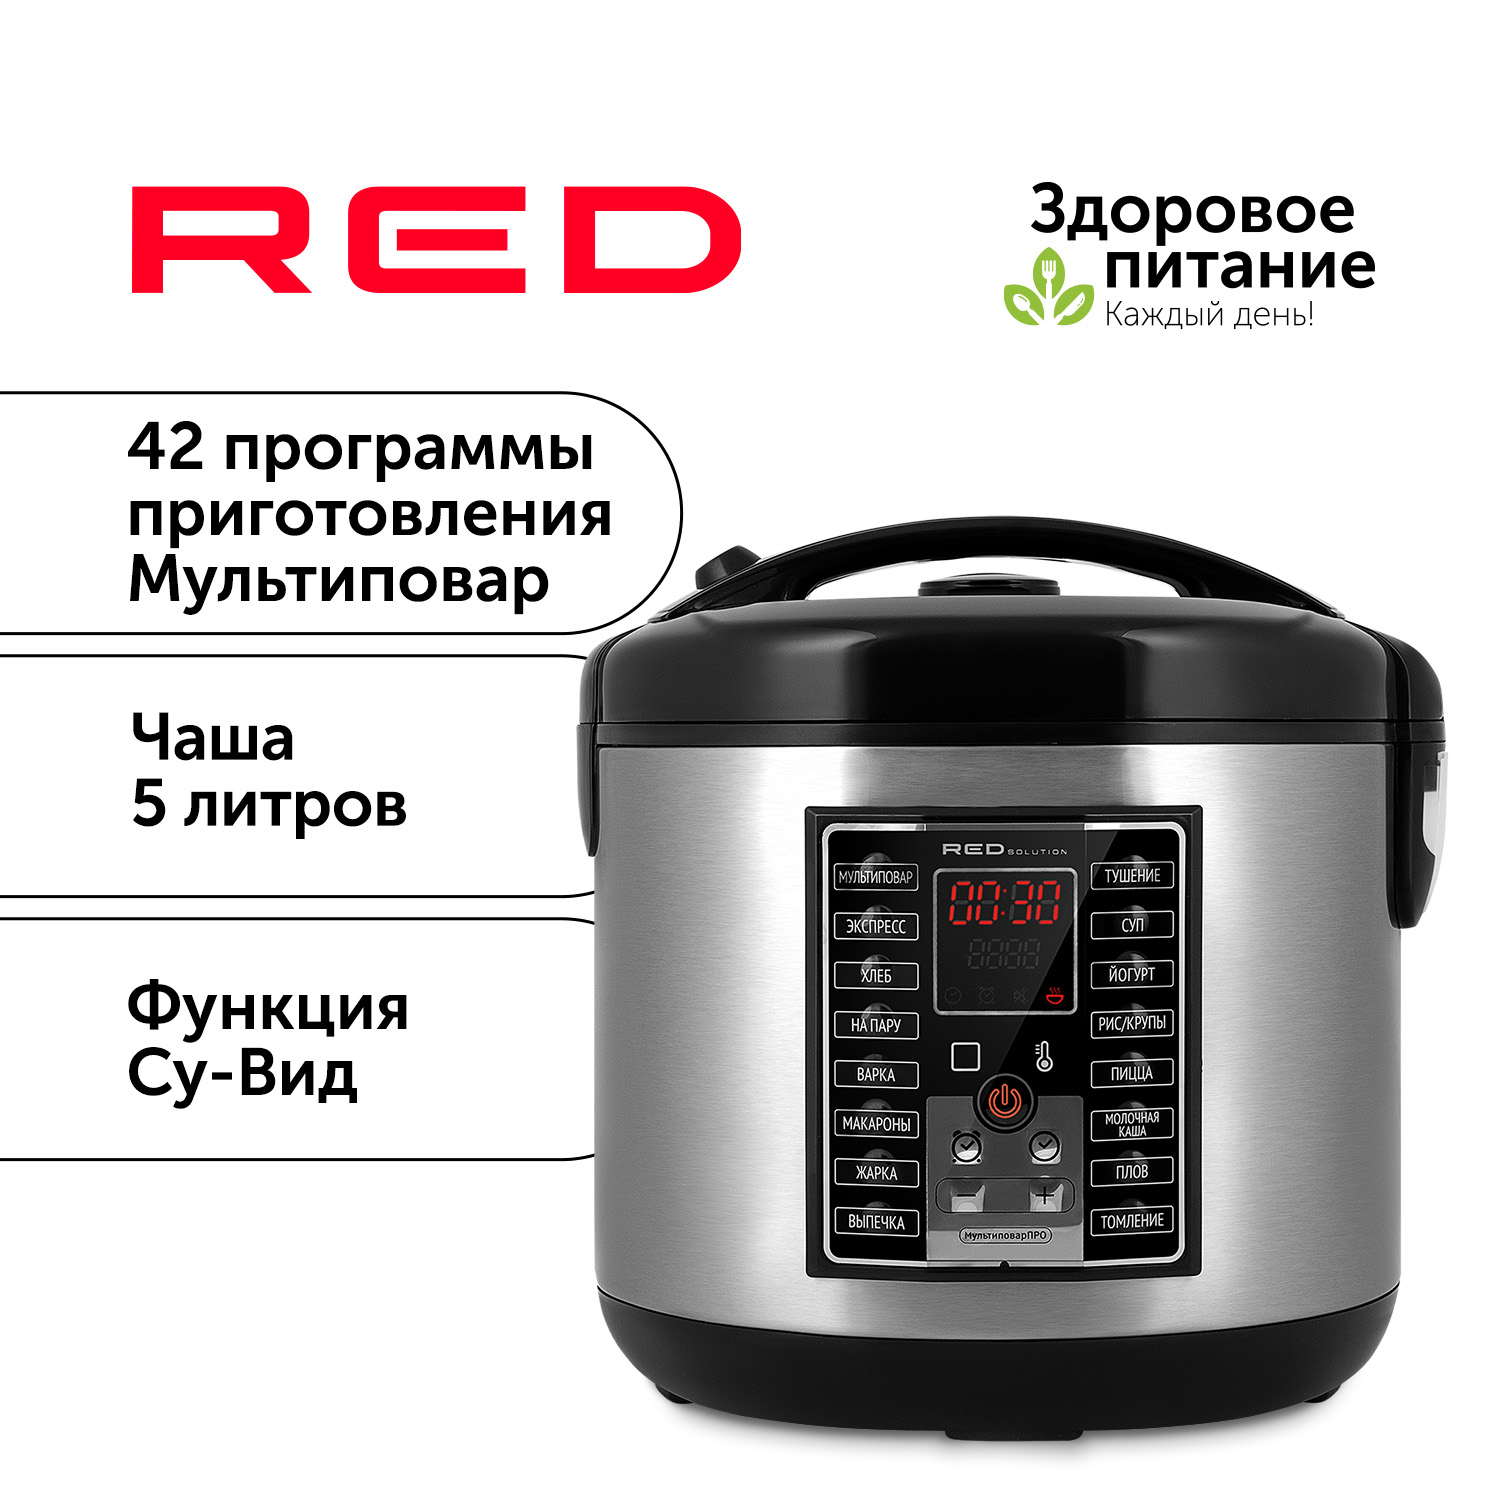 Мультиварка RED SOLUTION RMC-M25 серебристый, черный, купить в Москве, цены в интернет-магазинах на Мегамаркет